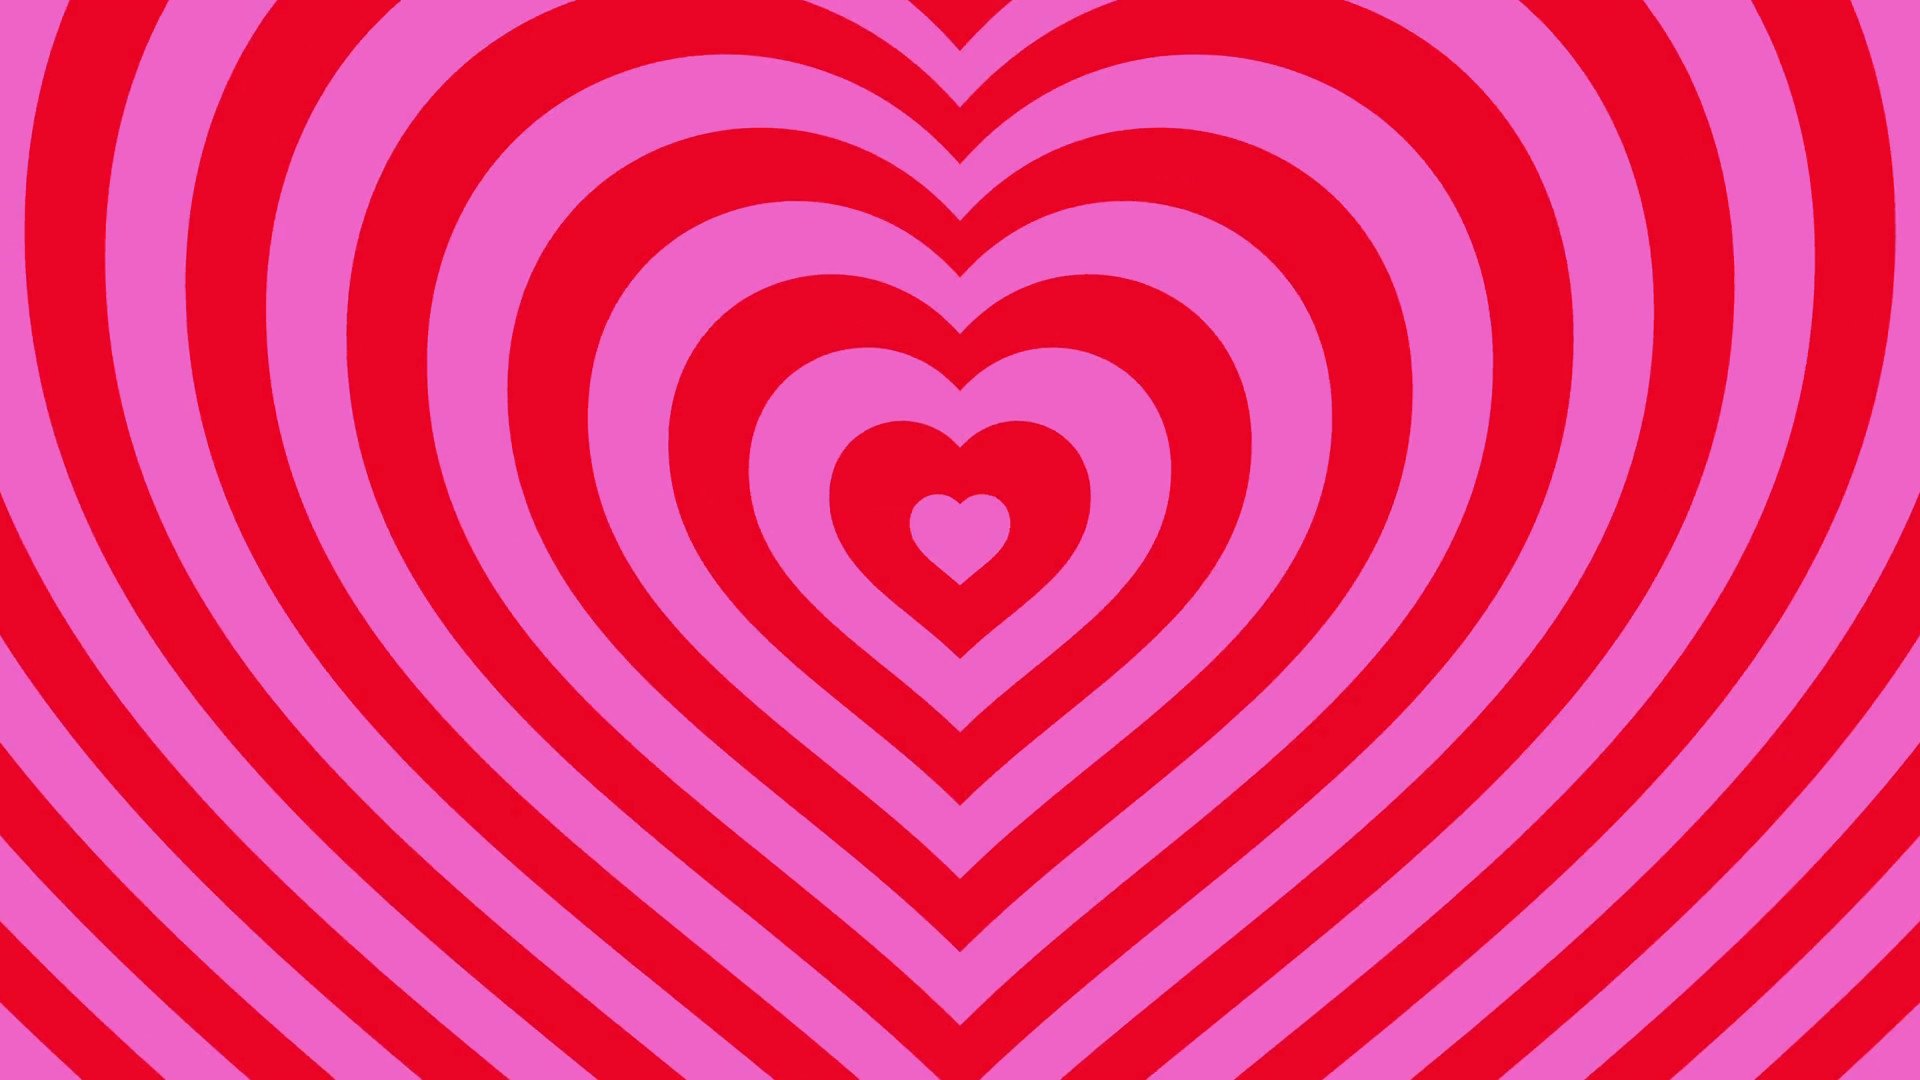 Картинка розовые сердечки на белом фоне